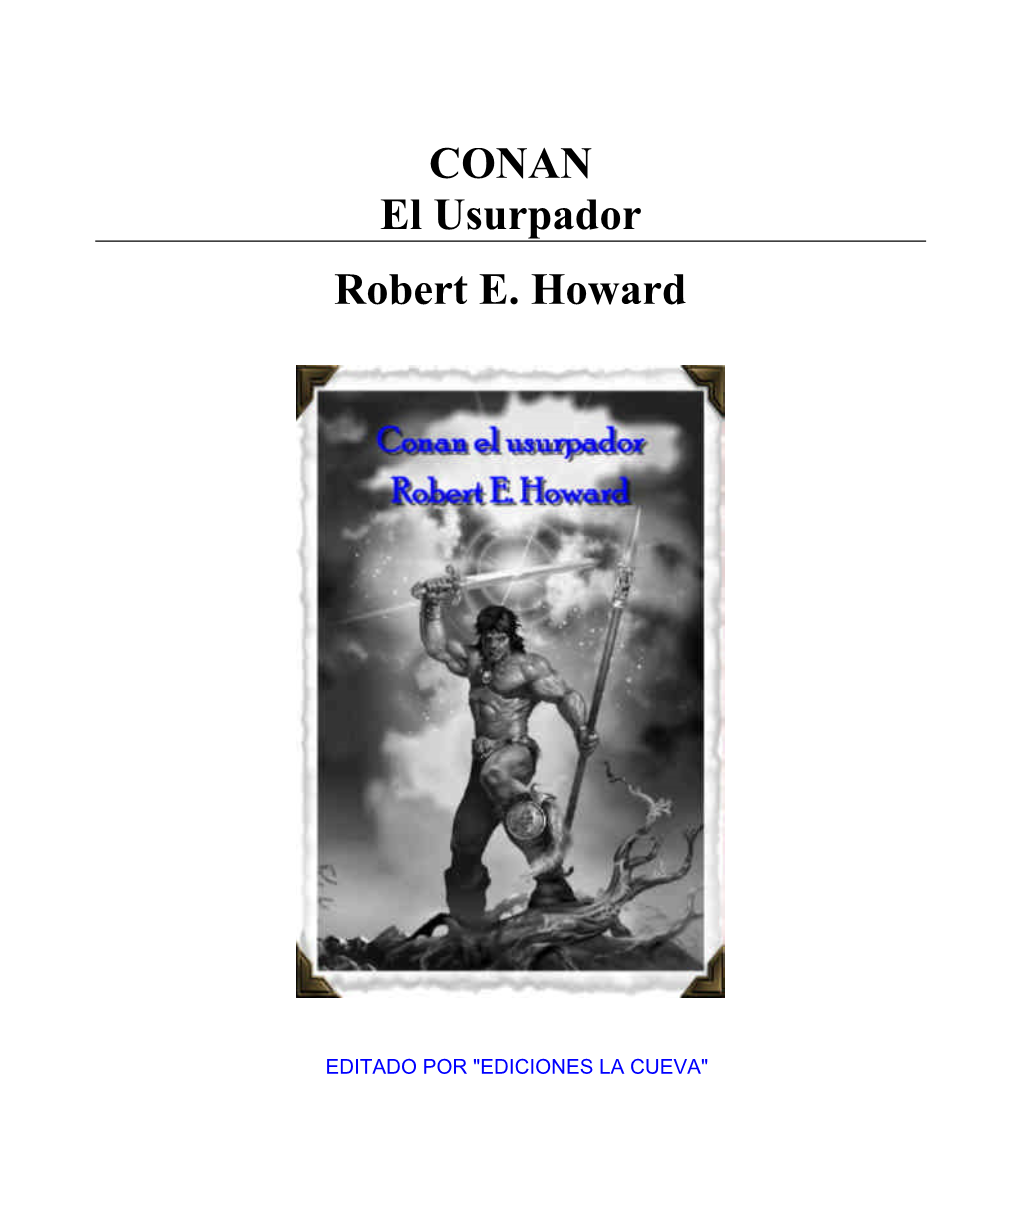 CONAN El Usurpador Robert E. Howard